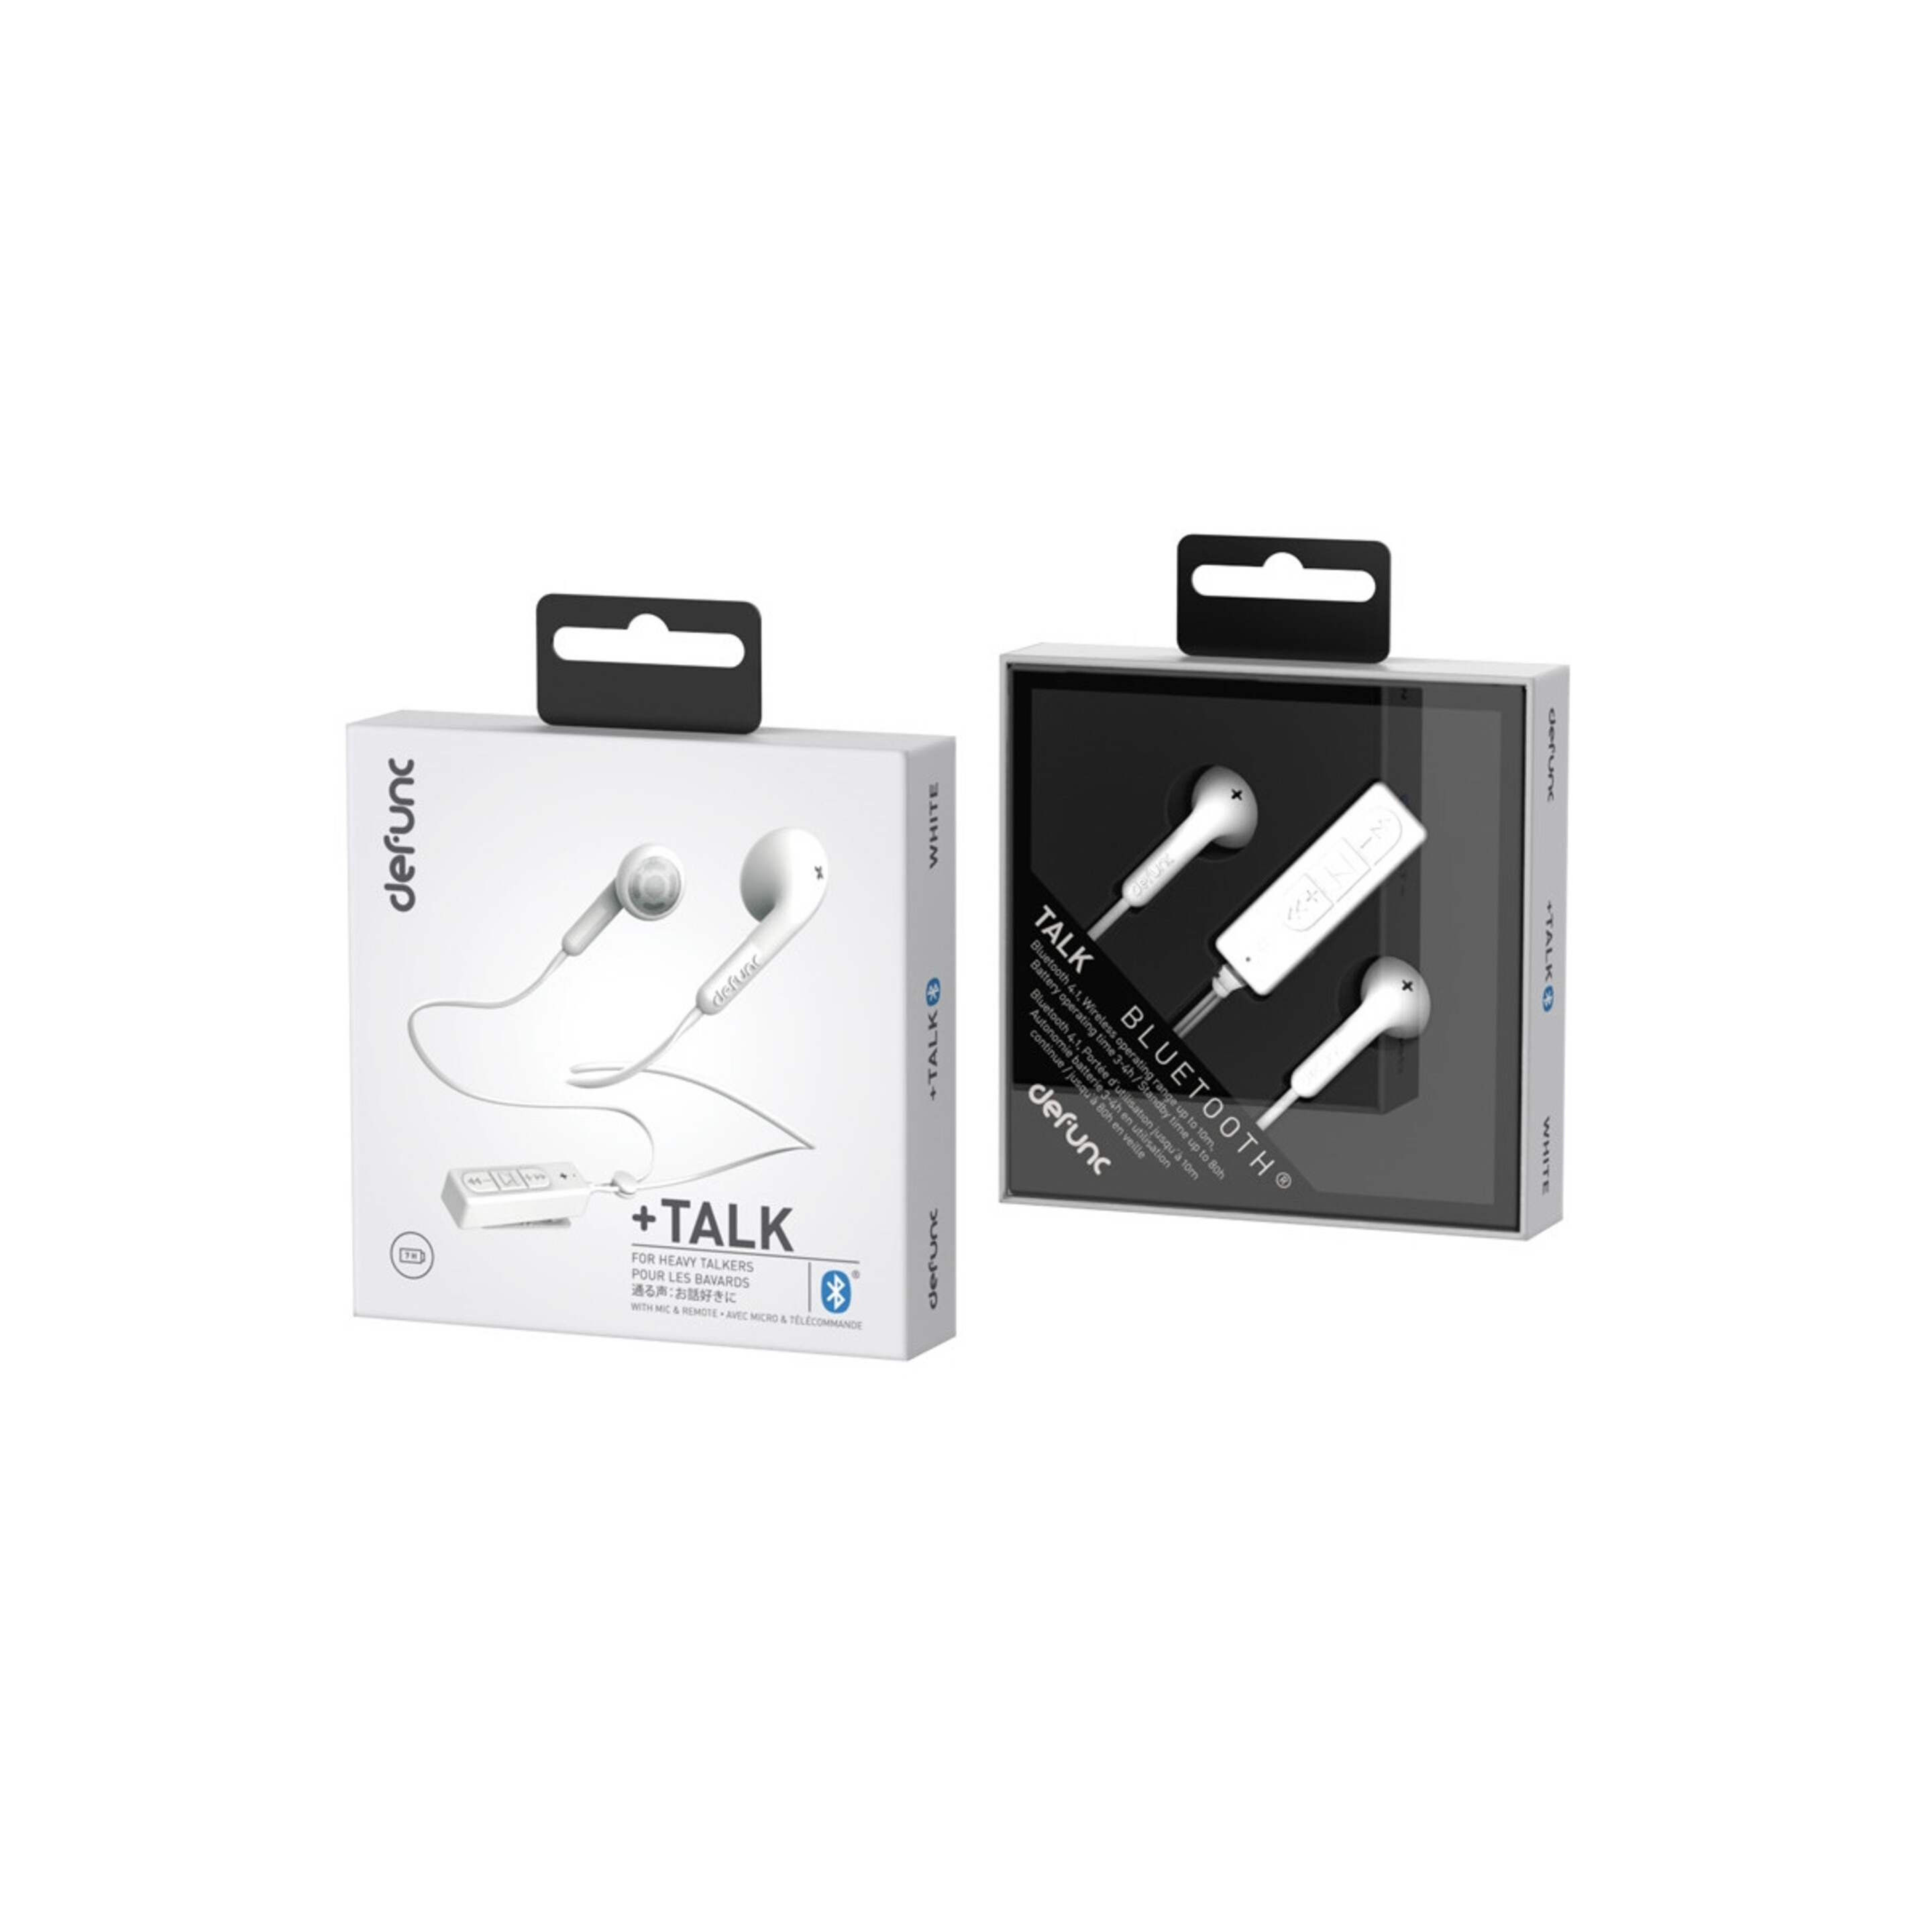 Auriculares Bluetooth Defunc Plus Talk - Blanco - Aurblt  MKP